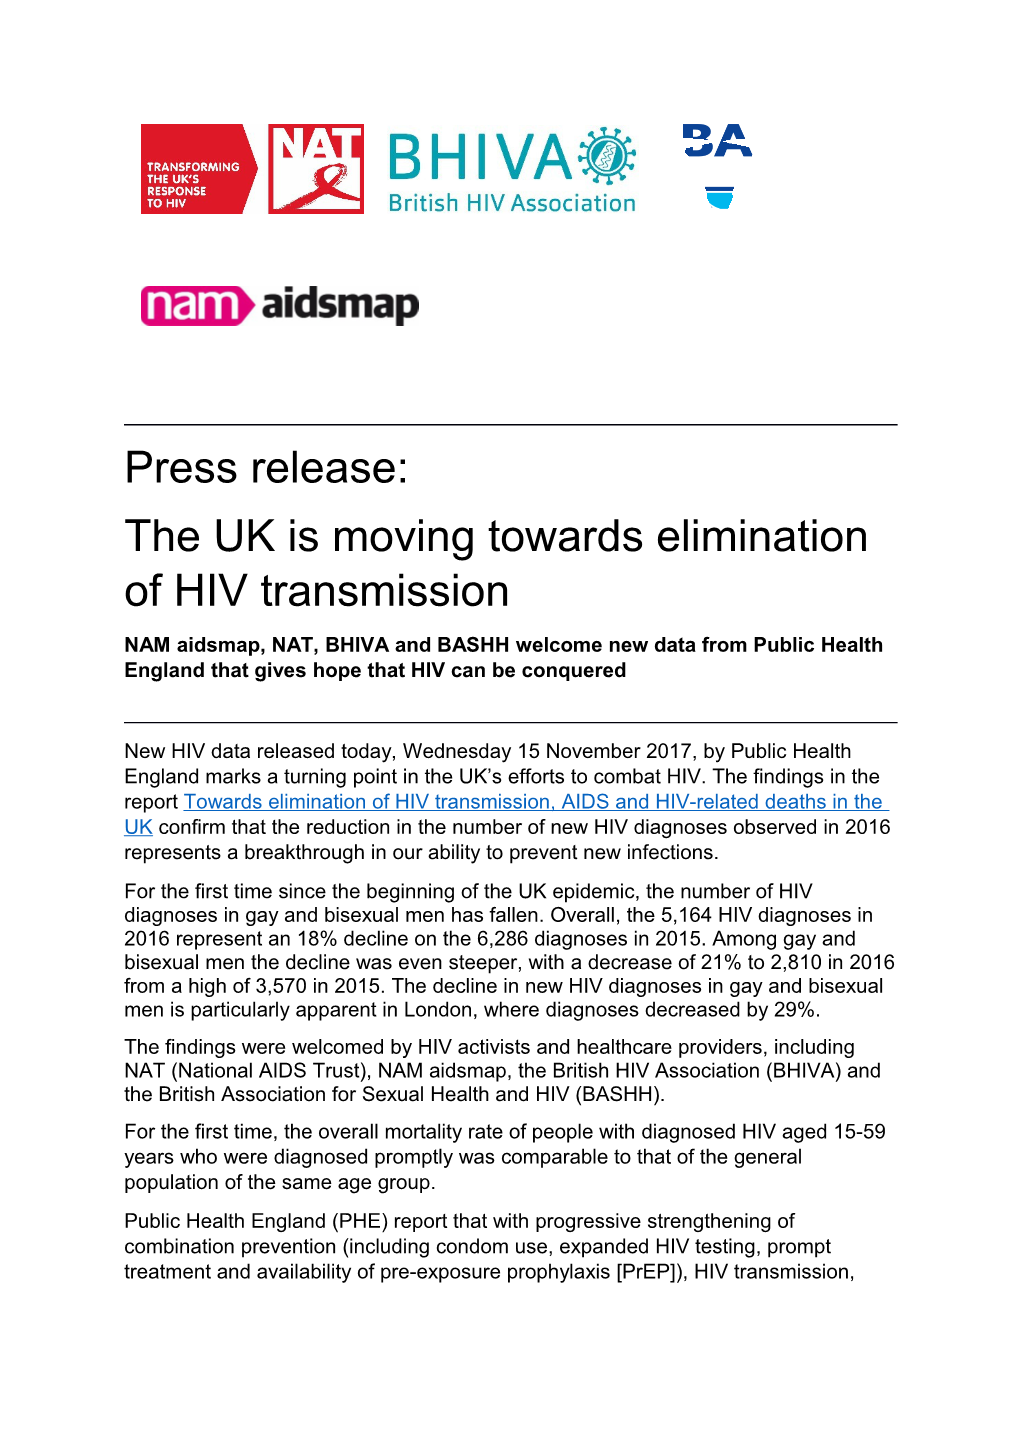 The UK Is Moving Towards Elimination of HIV Transmission